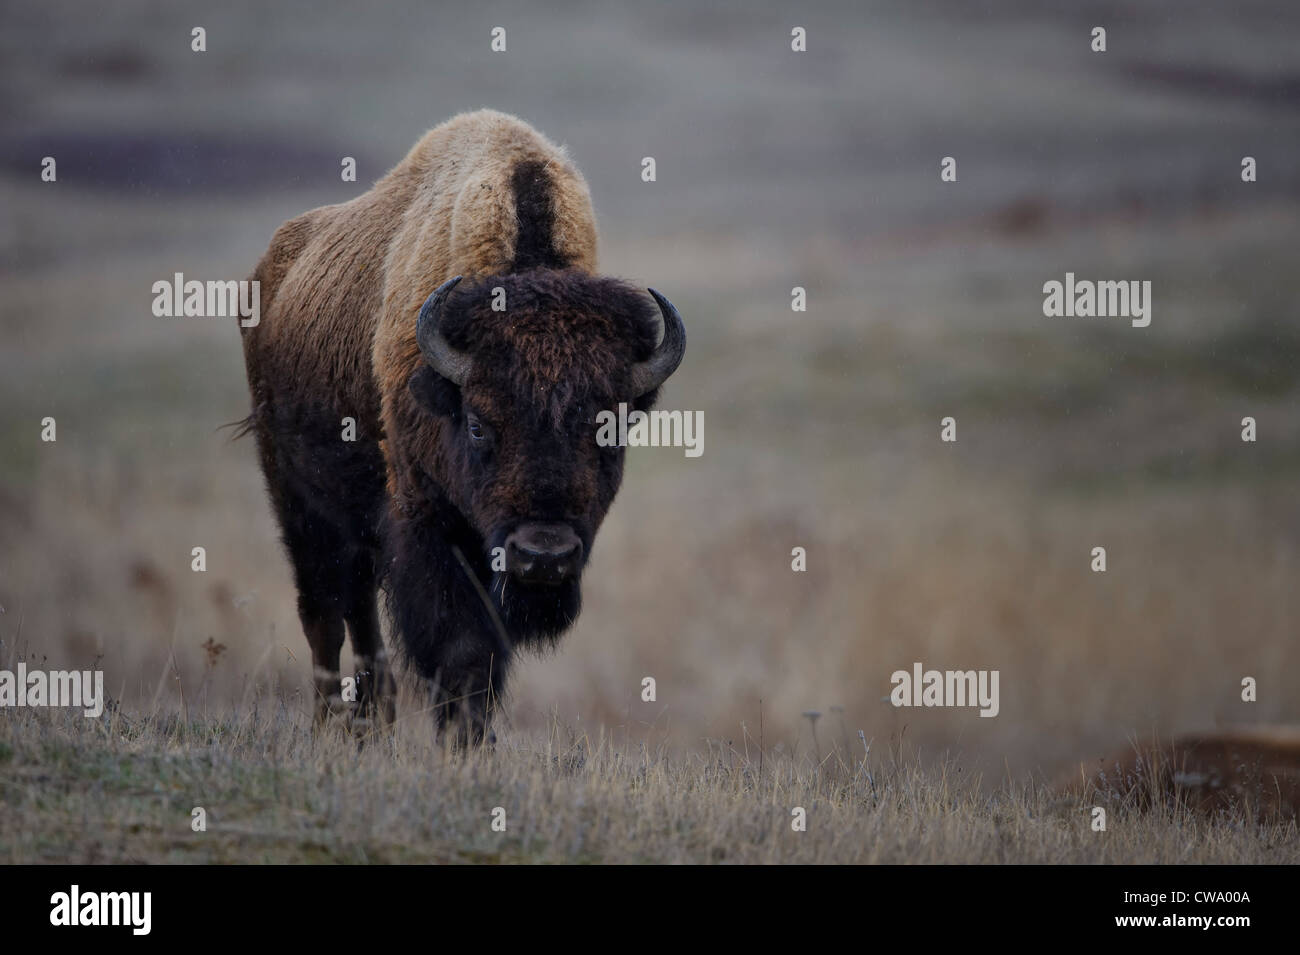 Bull el bisonte (Bison bison), National Bison Range, Montana Foto de stock